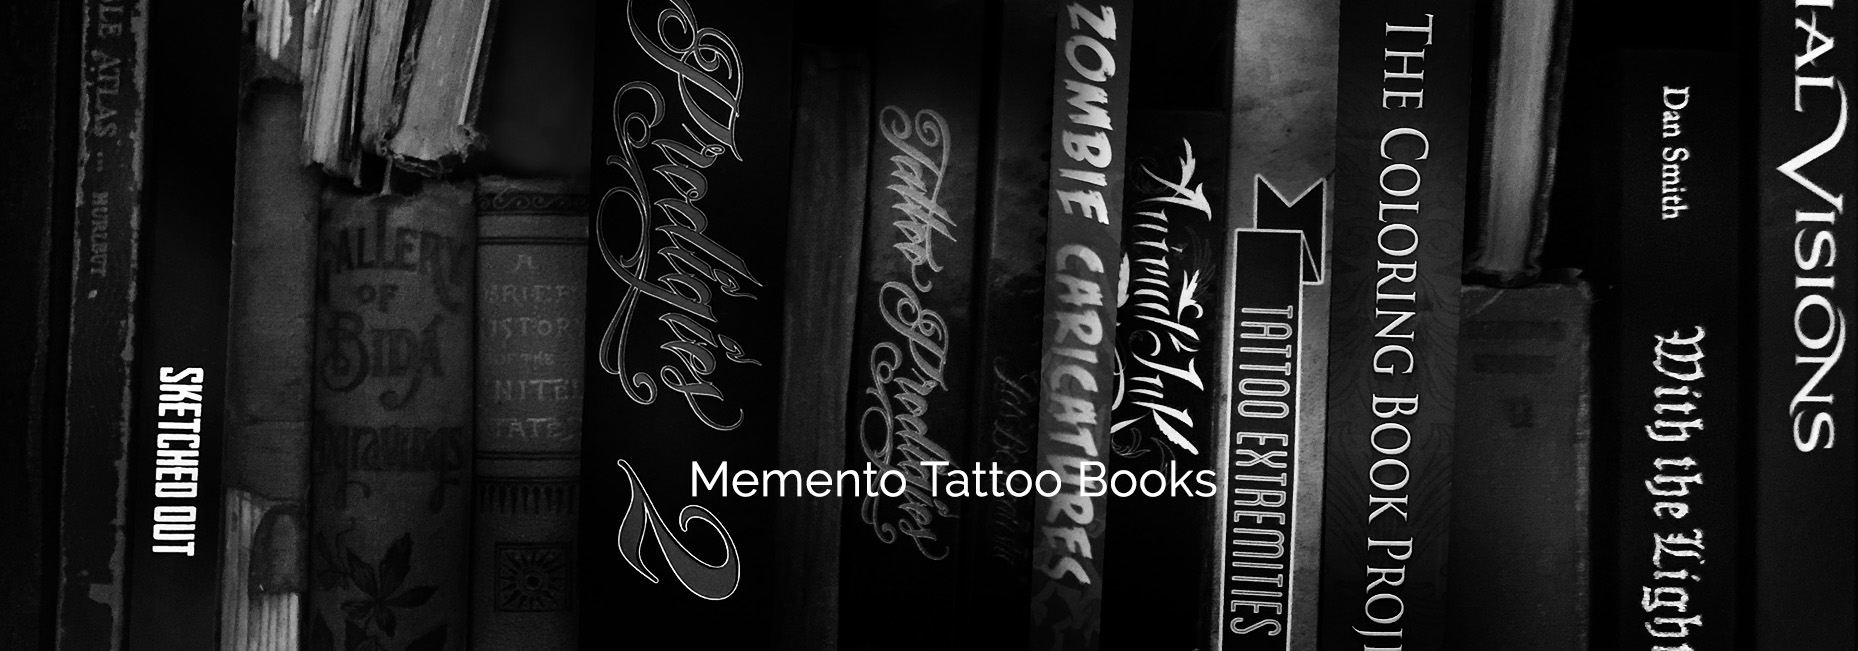 Best Tattoo Books